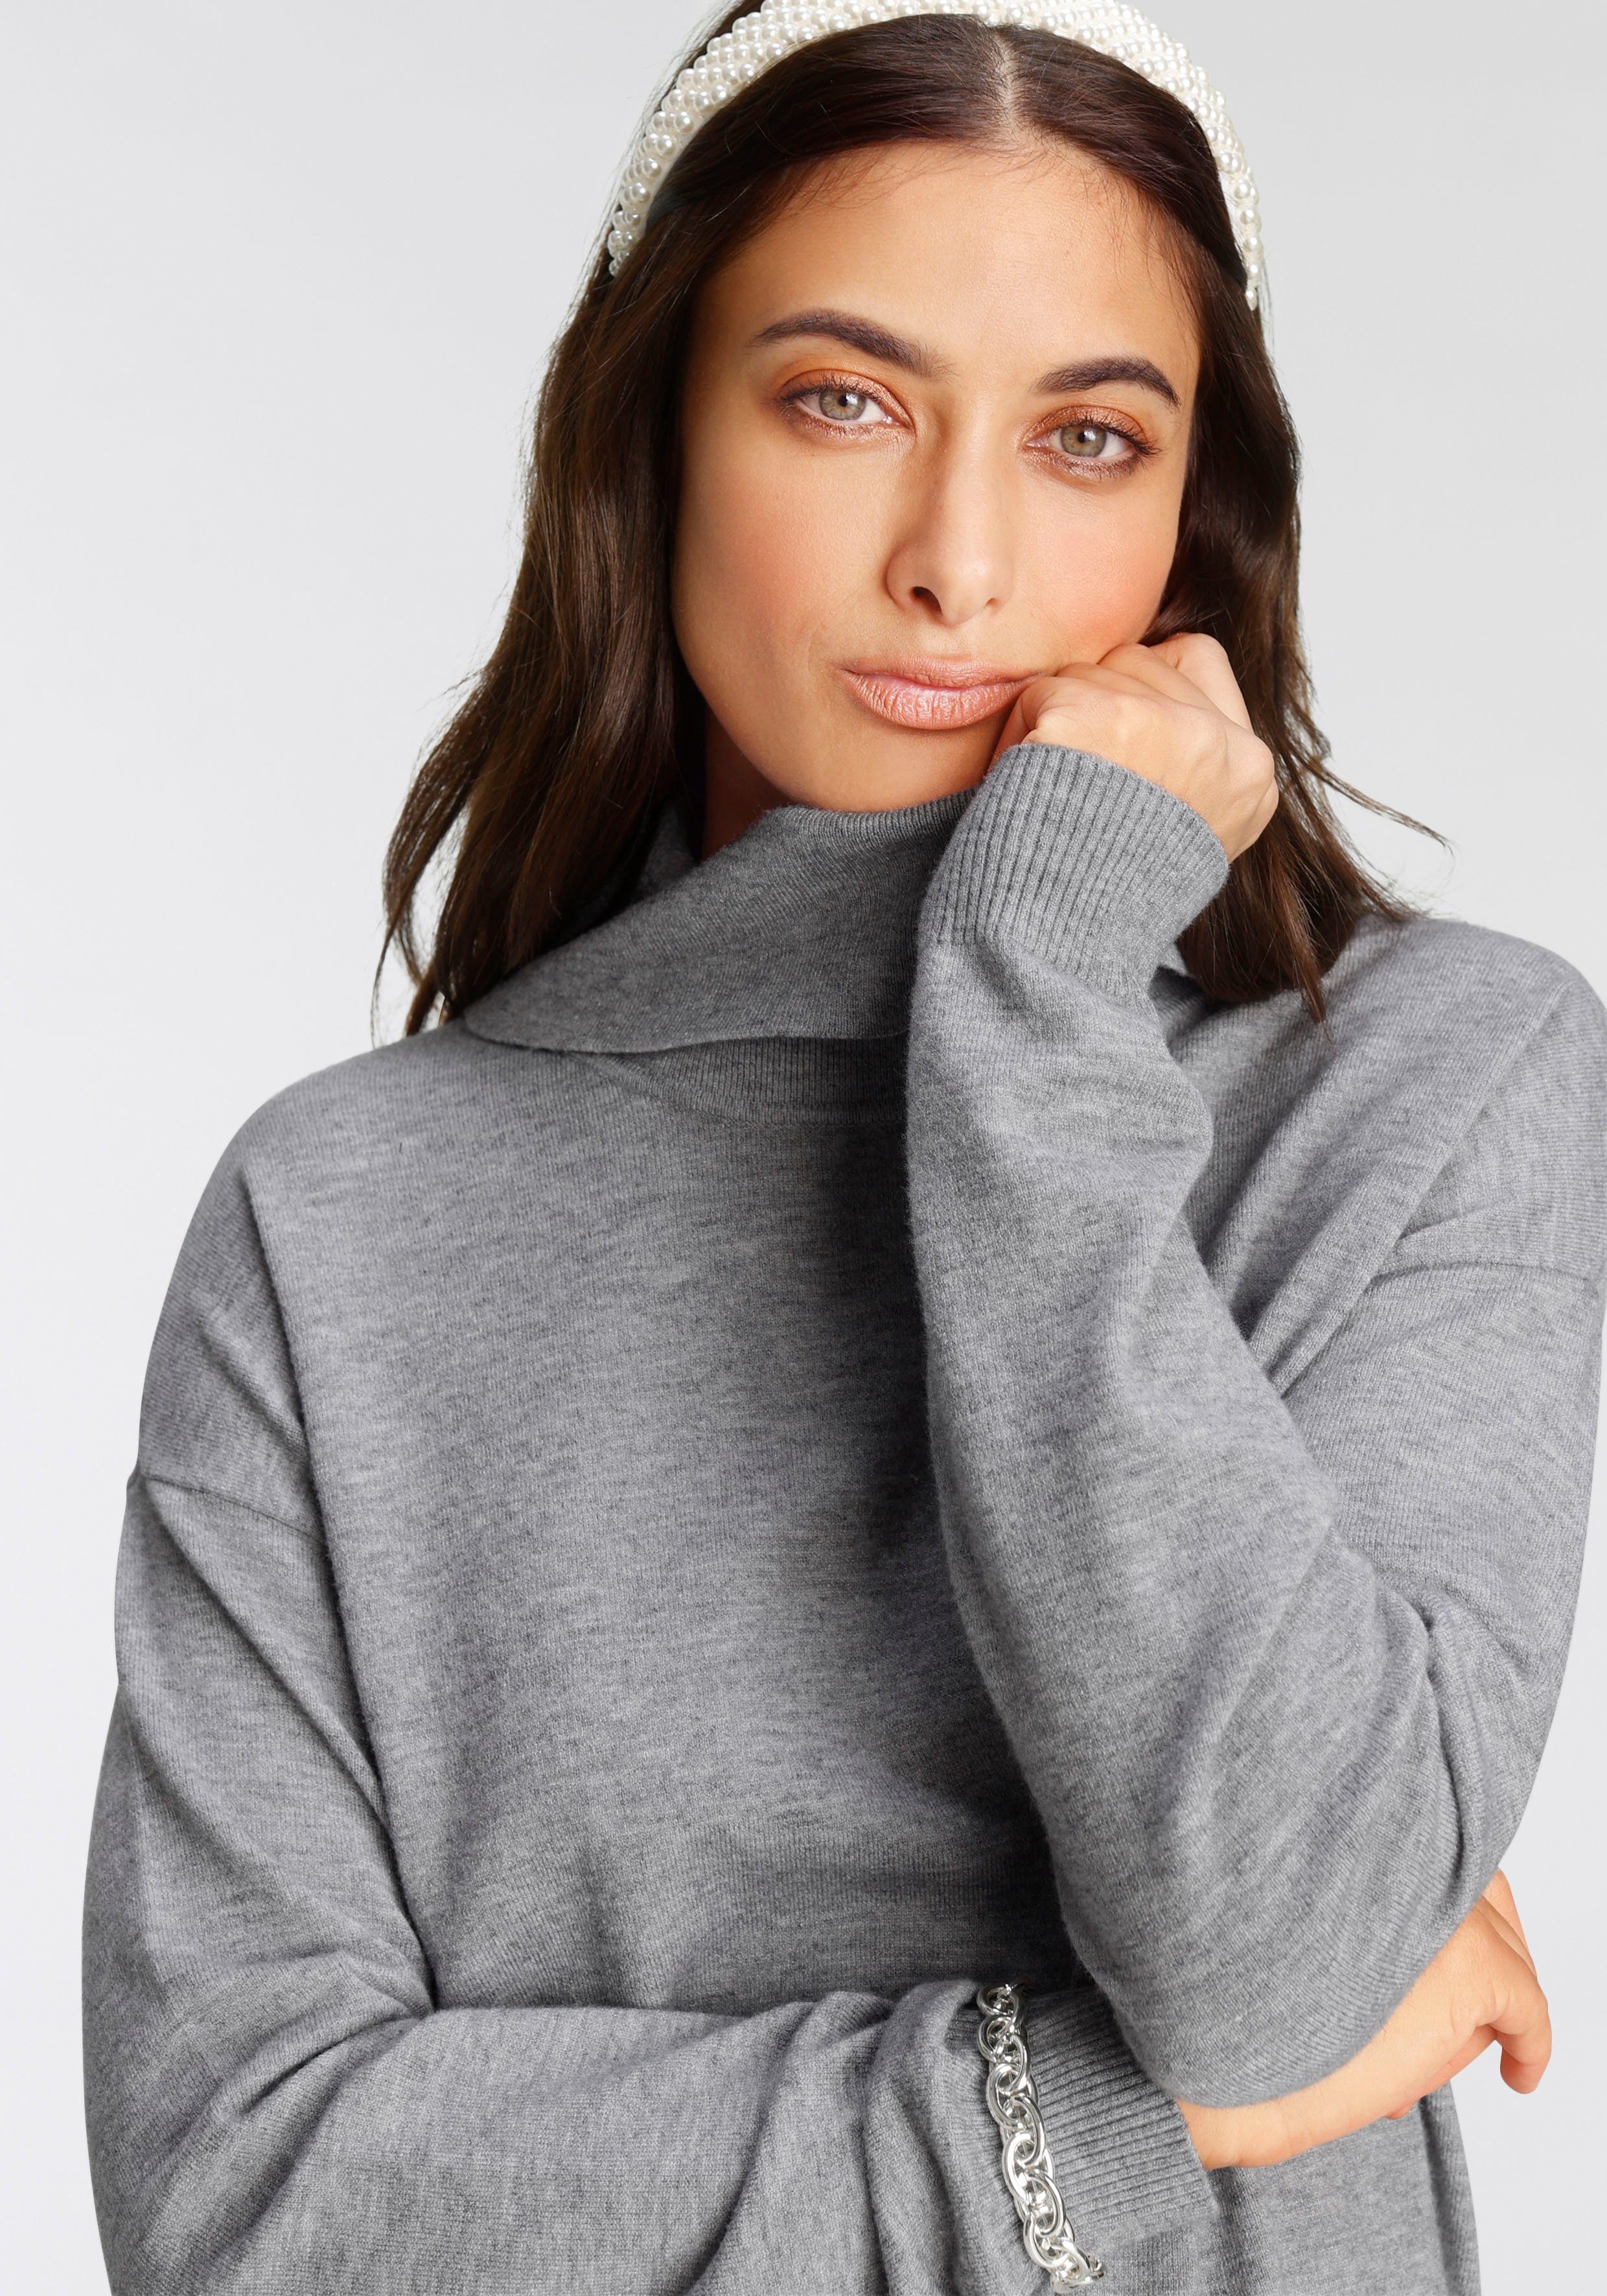 Weihnachtspullover für Damen kaufen » Christmas Sweater | OTTO